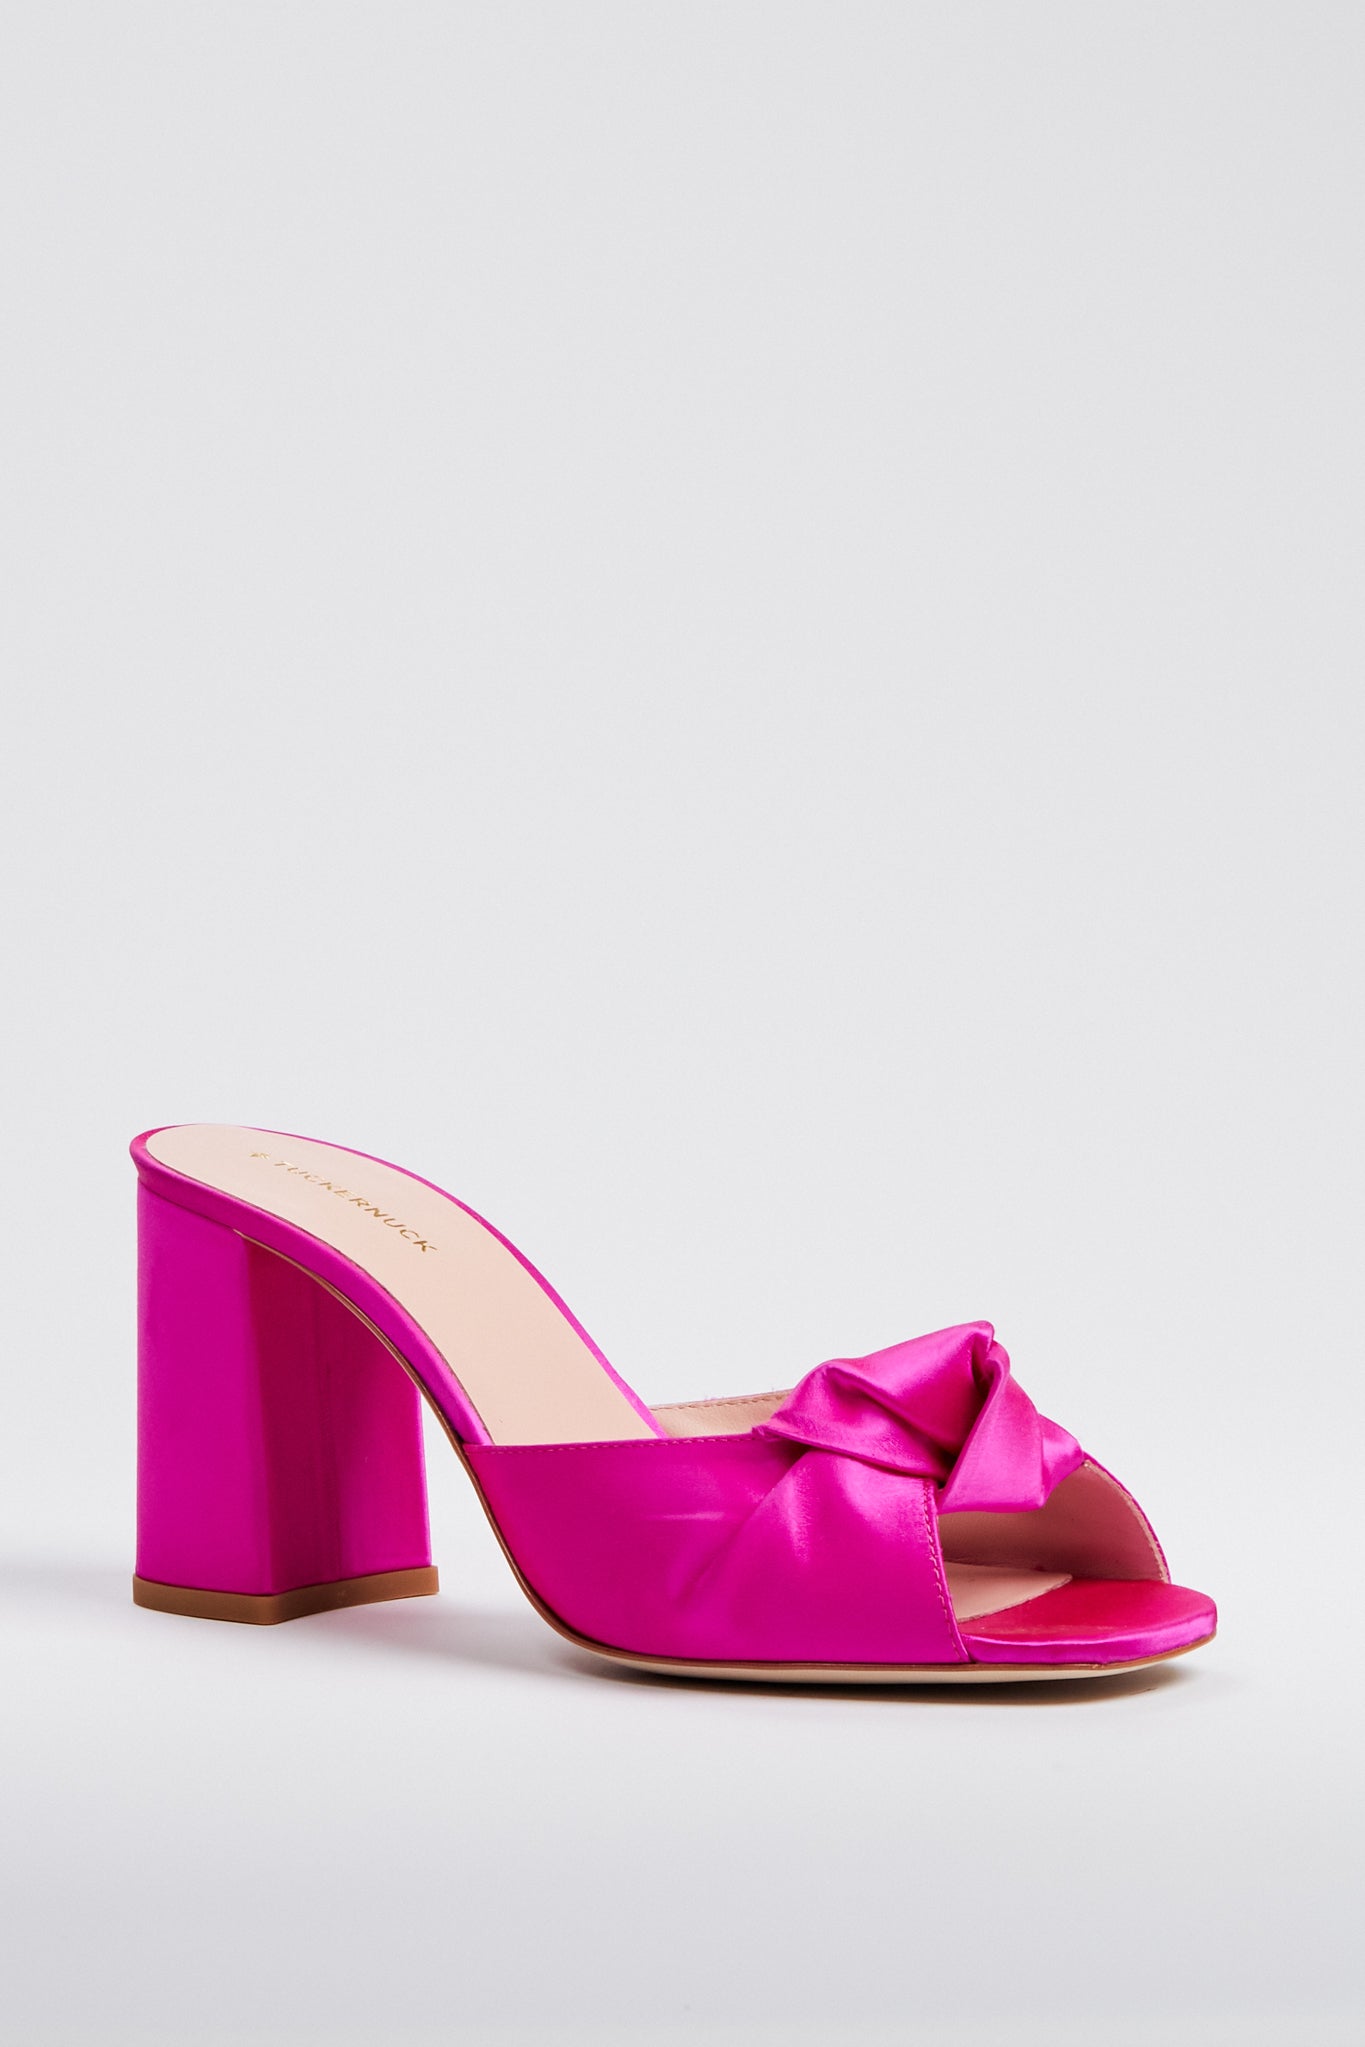 Pink Satin Blake Heels | Tuckernuck Shoes